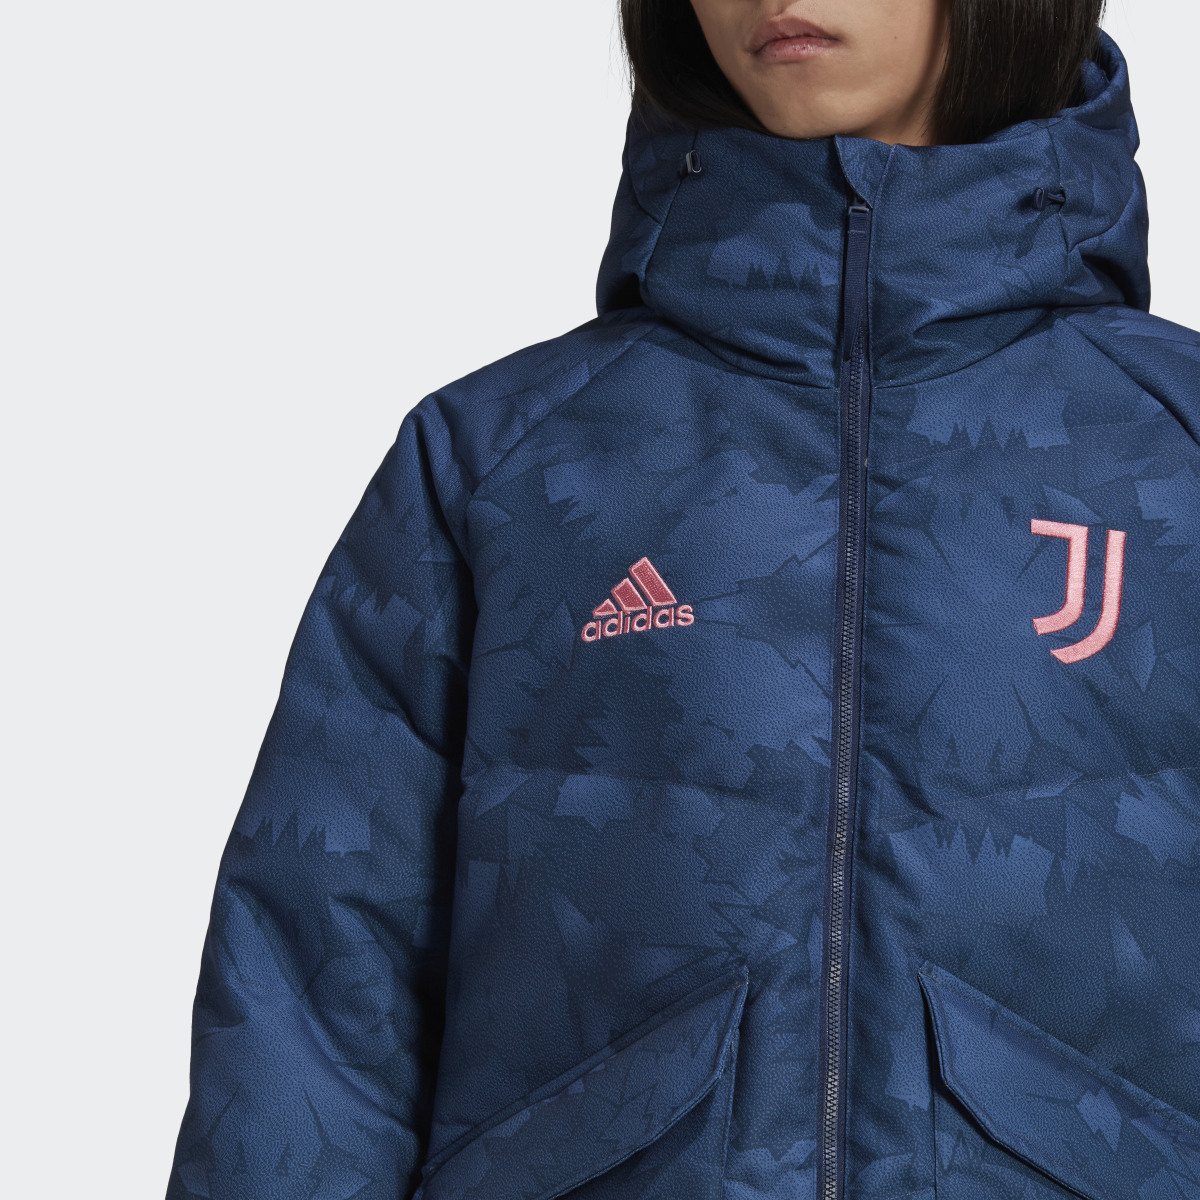 Adidas Juventus Lifestyler Down Jacket. 6